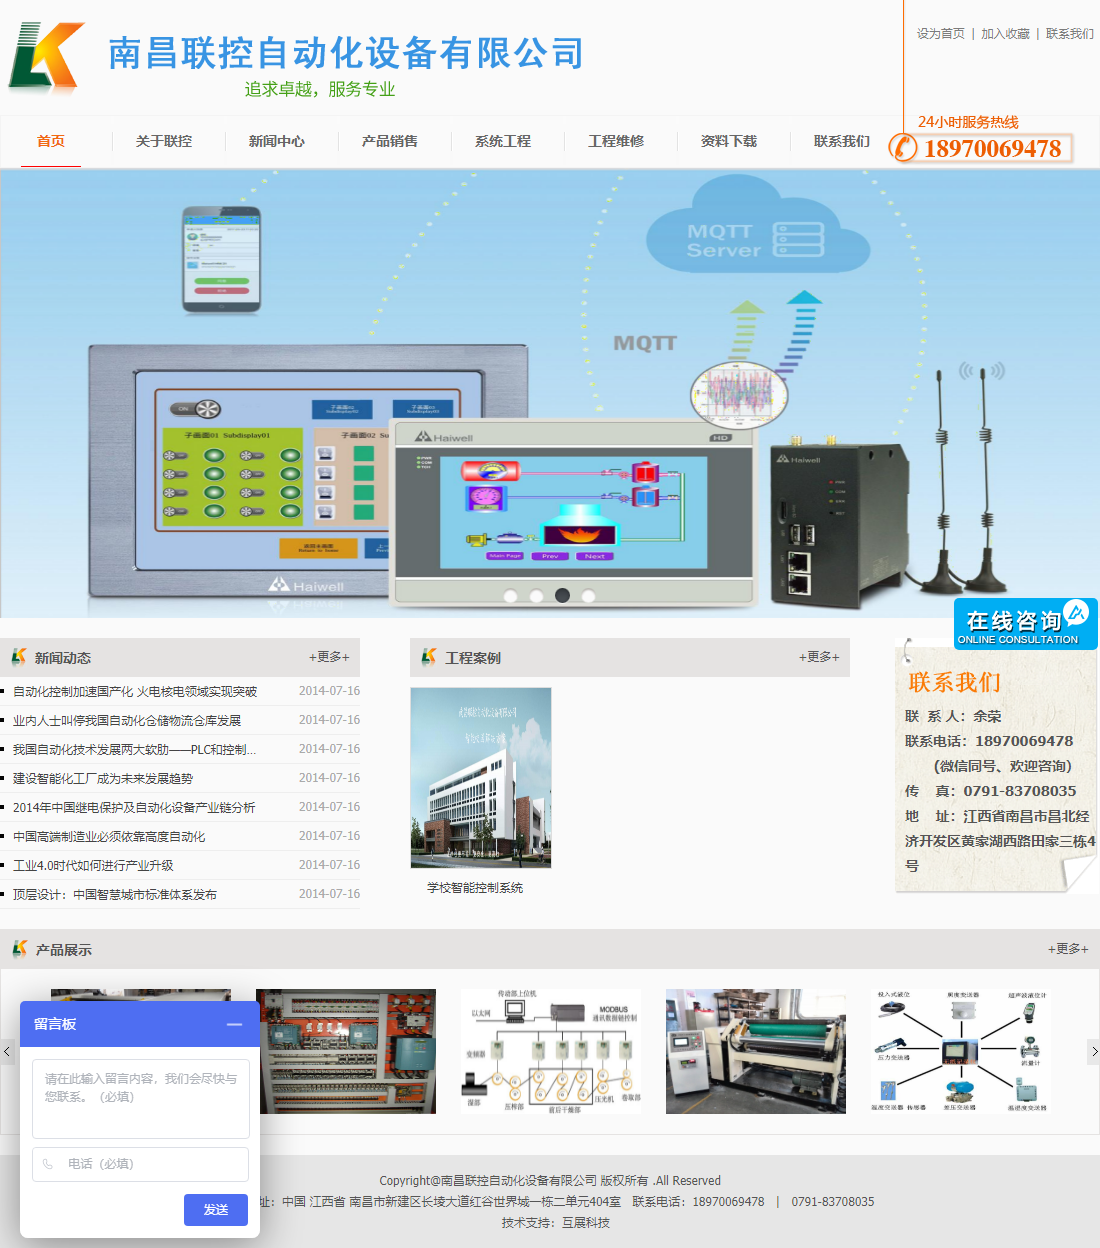 南昌联控自动化设备有限公司网站案例